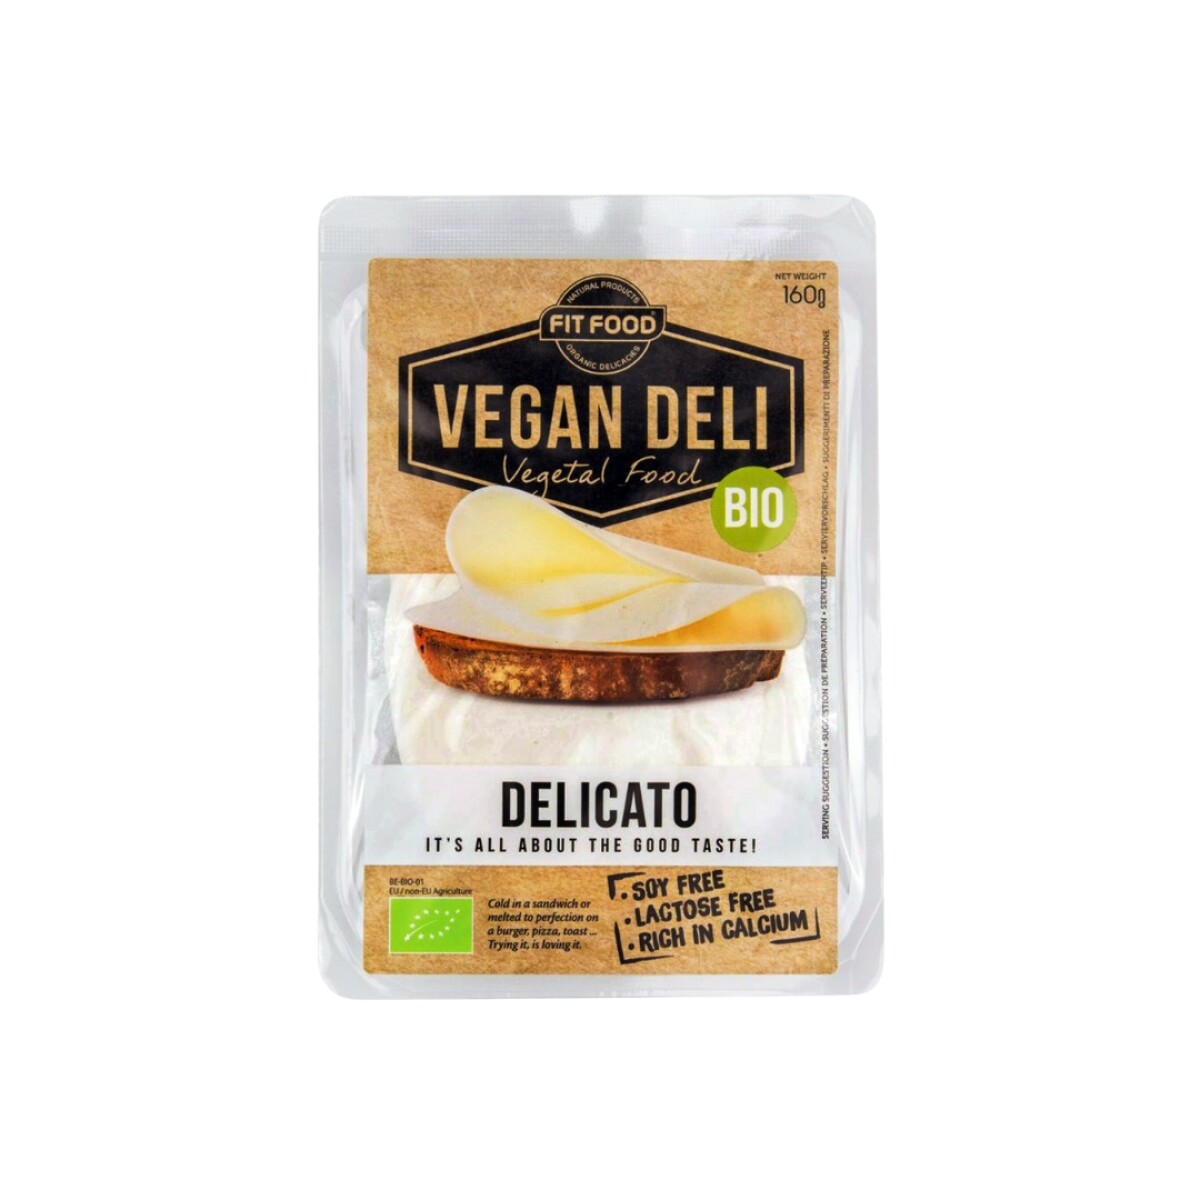 Queso Delicato Vegan Deli 160g 